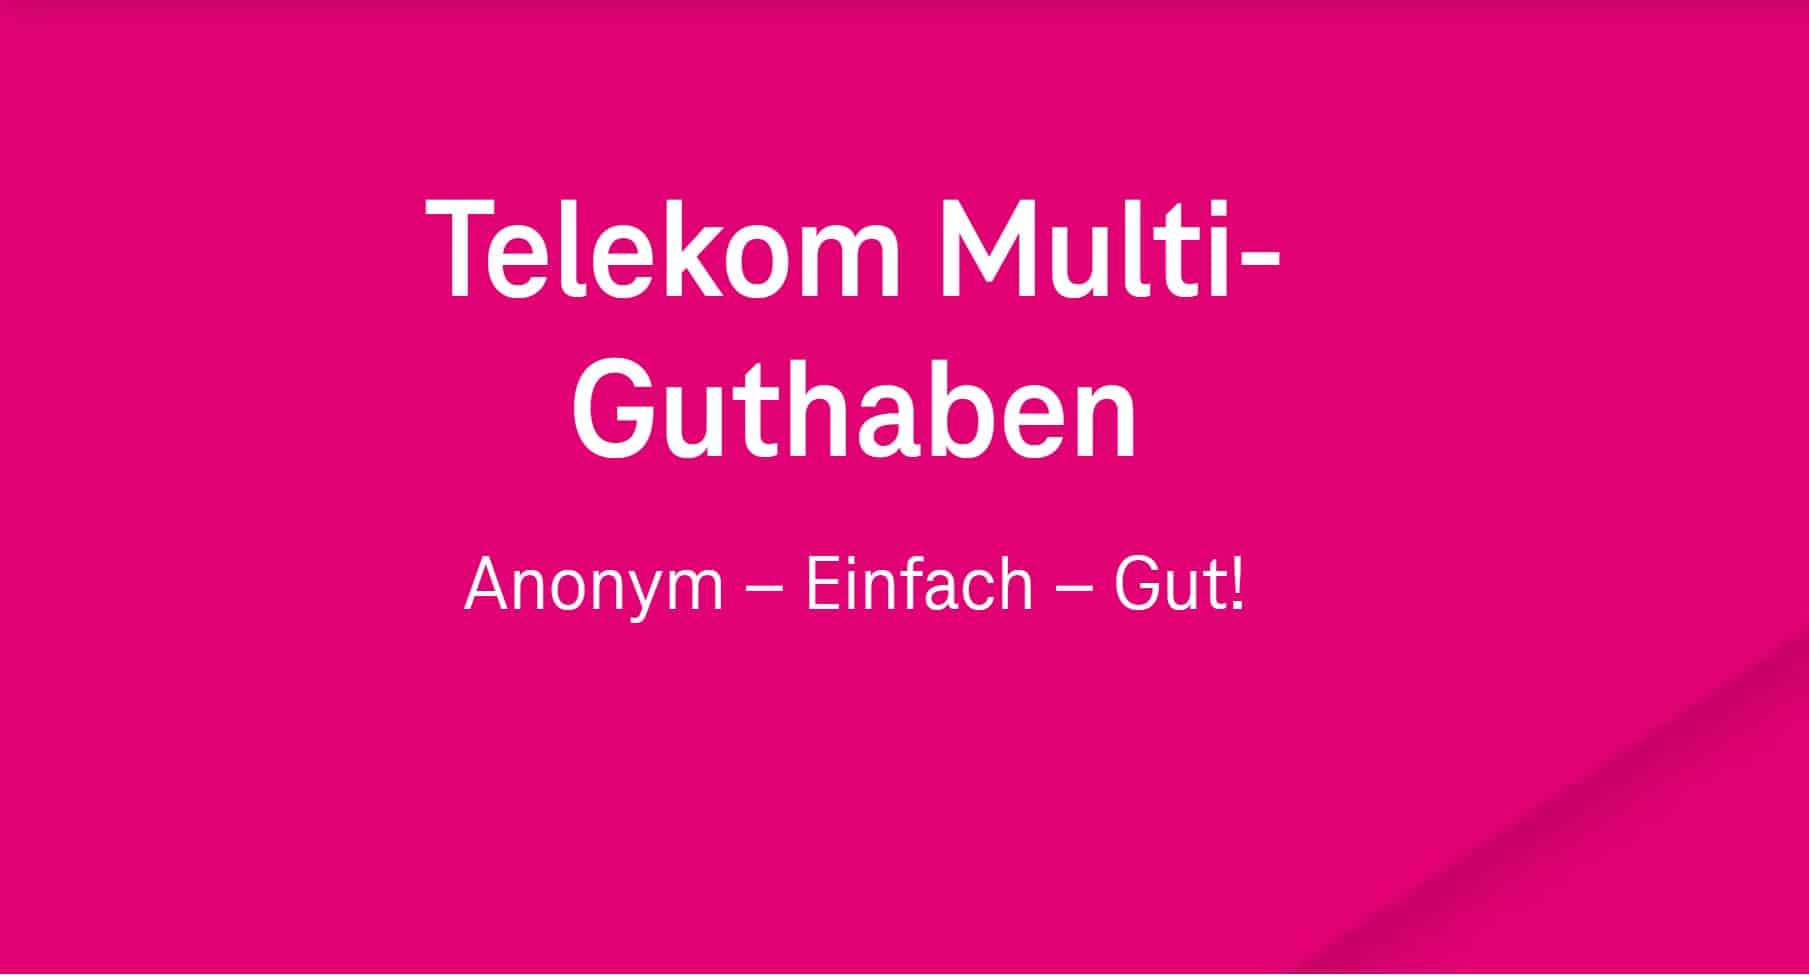 Telekom Multi-Guthaben: Das kann die anonyme Guthabenkarte